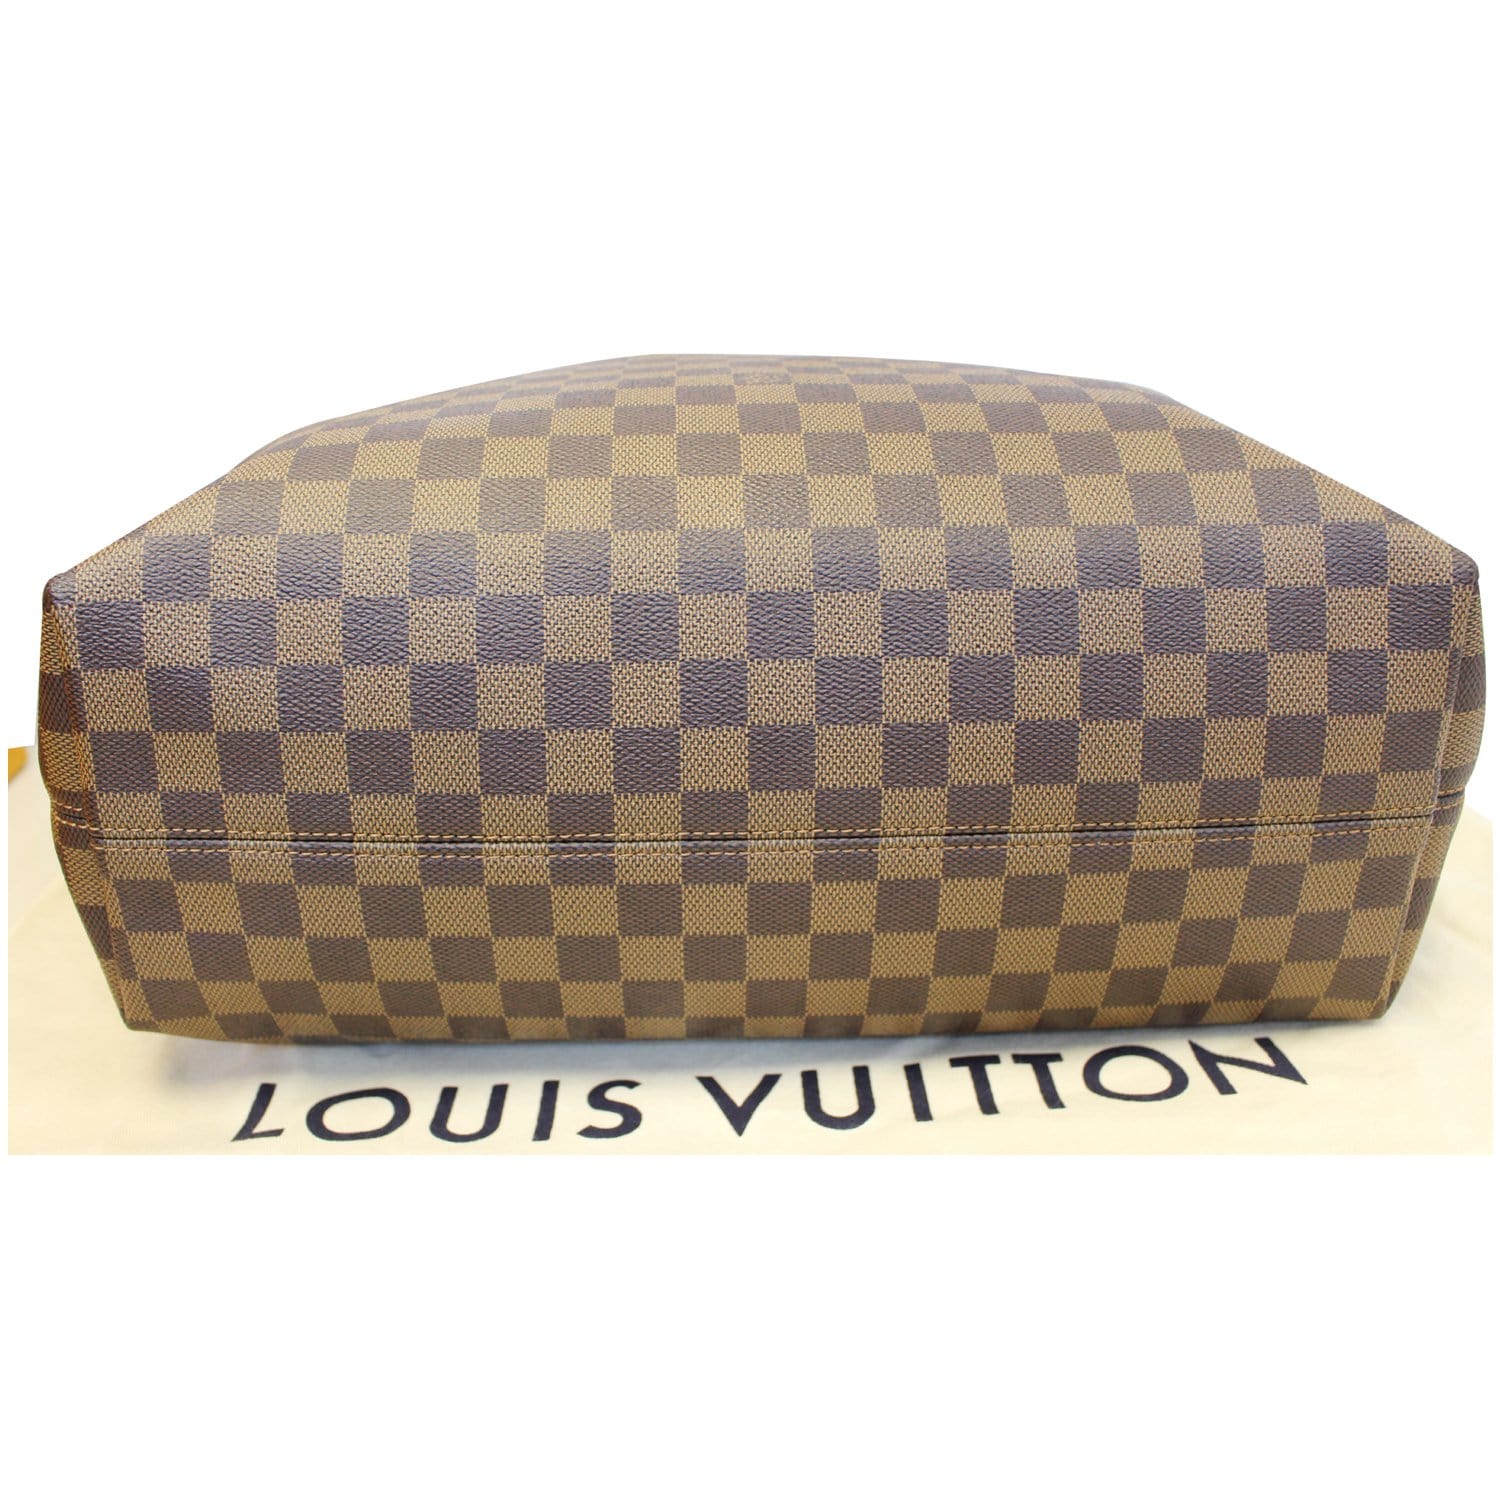 Louis Vuitton Damier Ebene Graceful MM Hobo Bag s330lk24 – Bagriculture